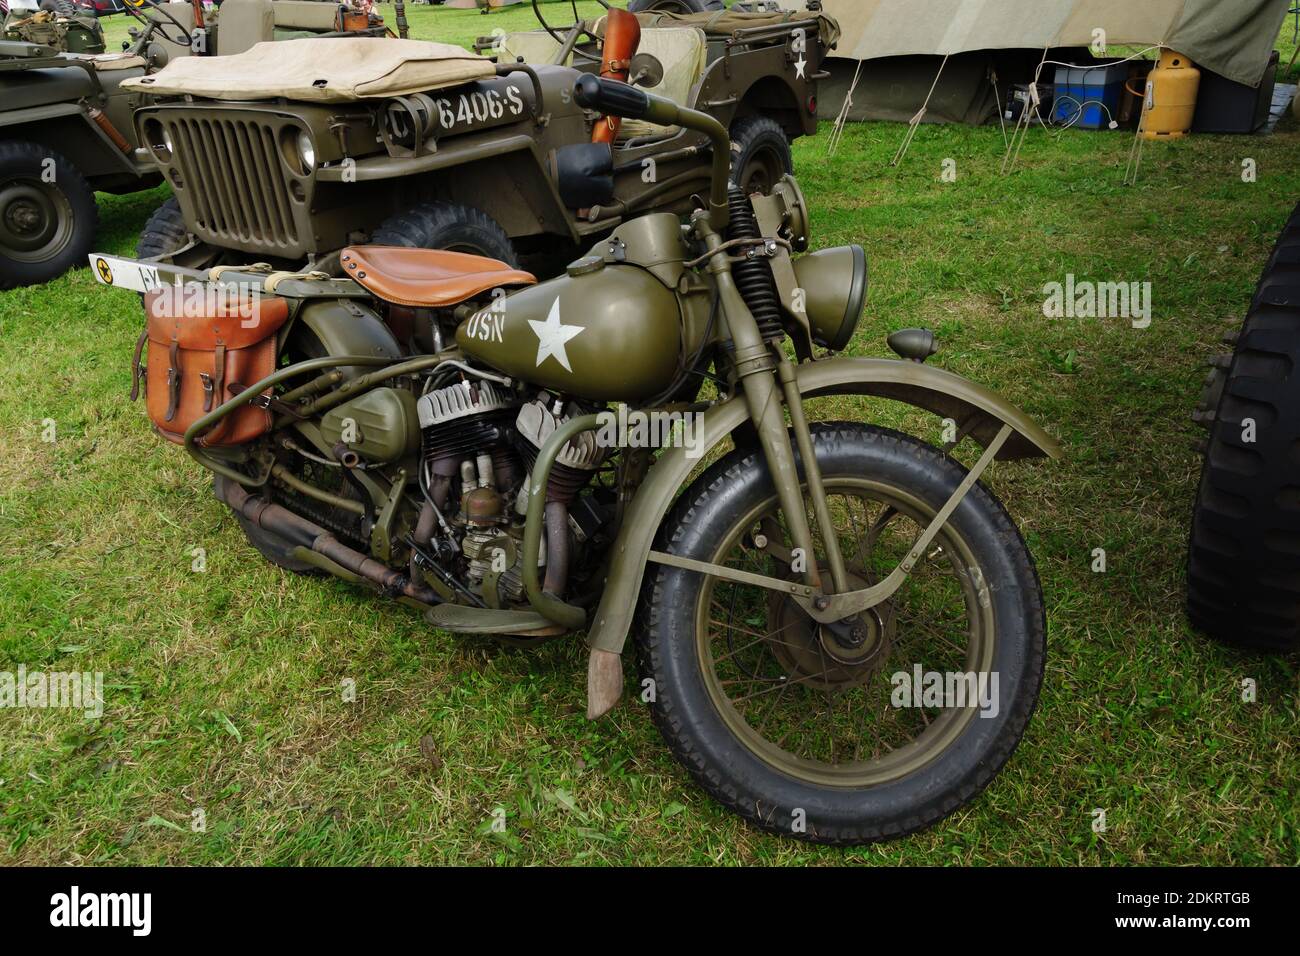 La motocicletta militare vintage Harley Davidson WLA è stata utilizzata ampiamente dagli eserciti alleati per i piloti di spedizione nella seconda guerra mondiale Foto Stock